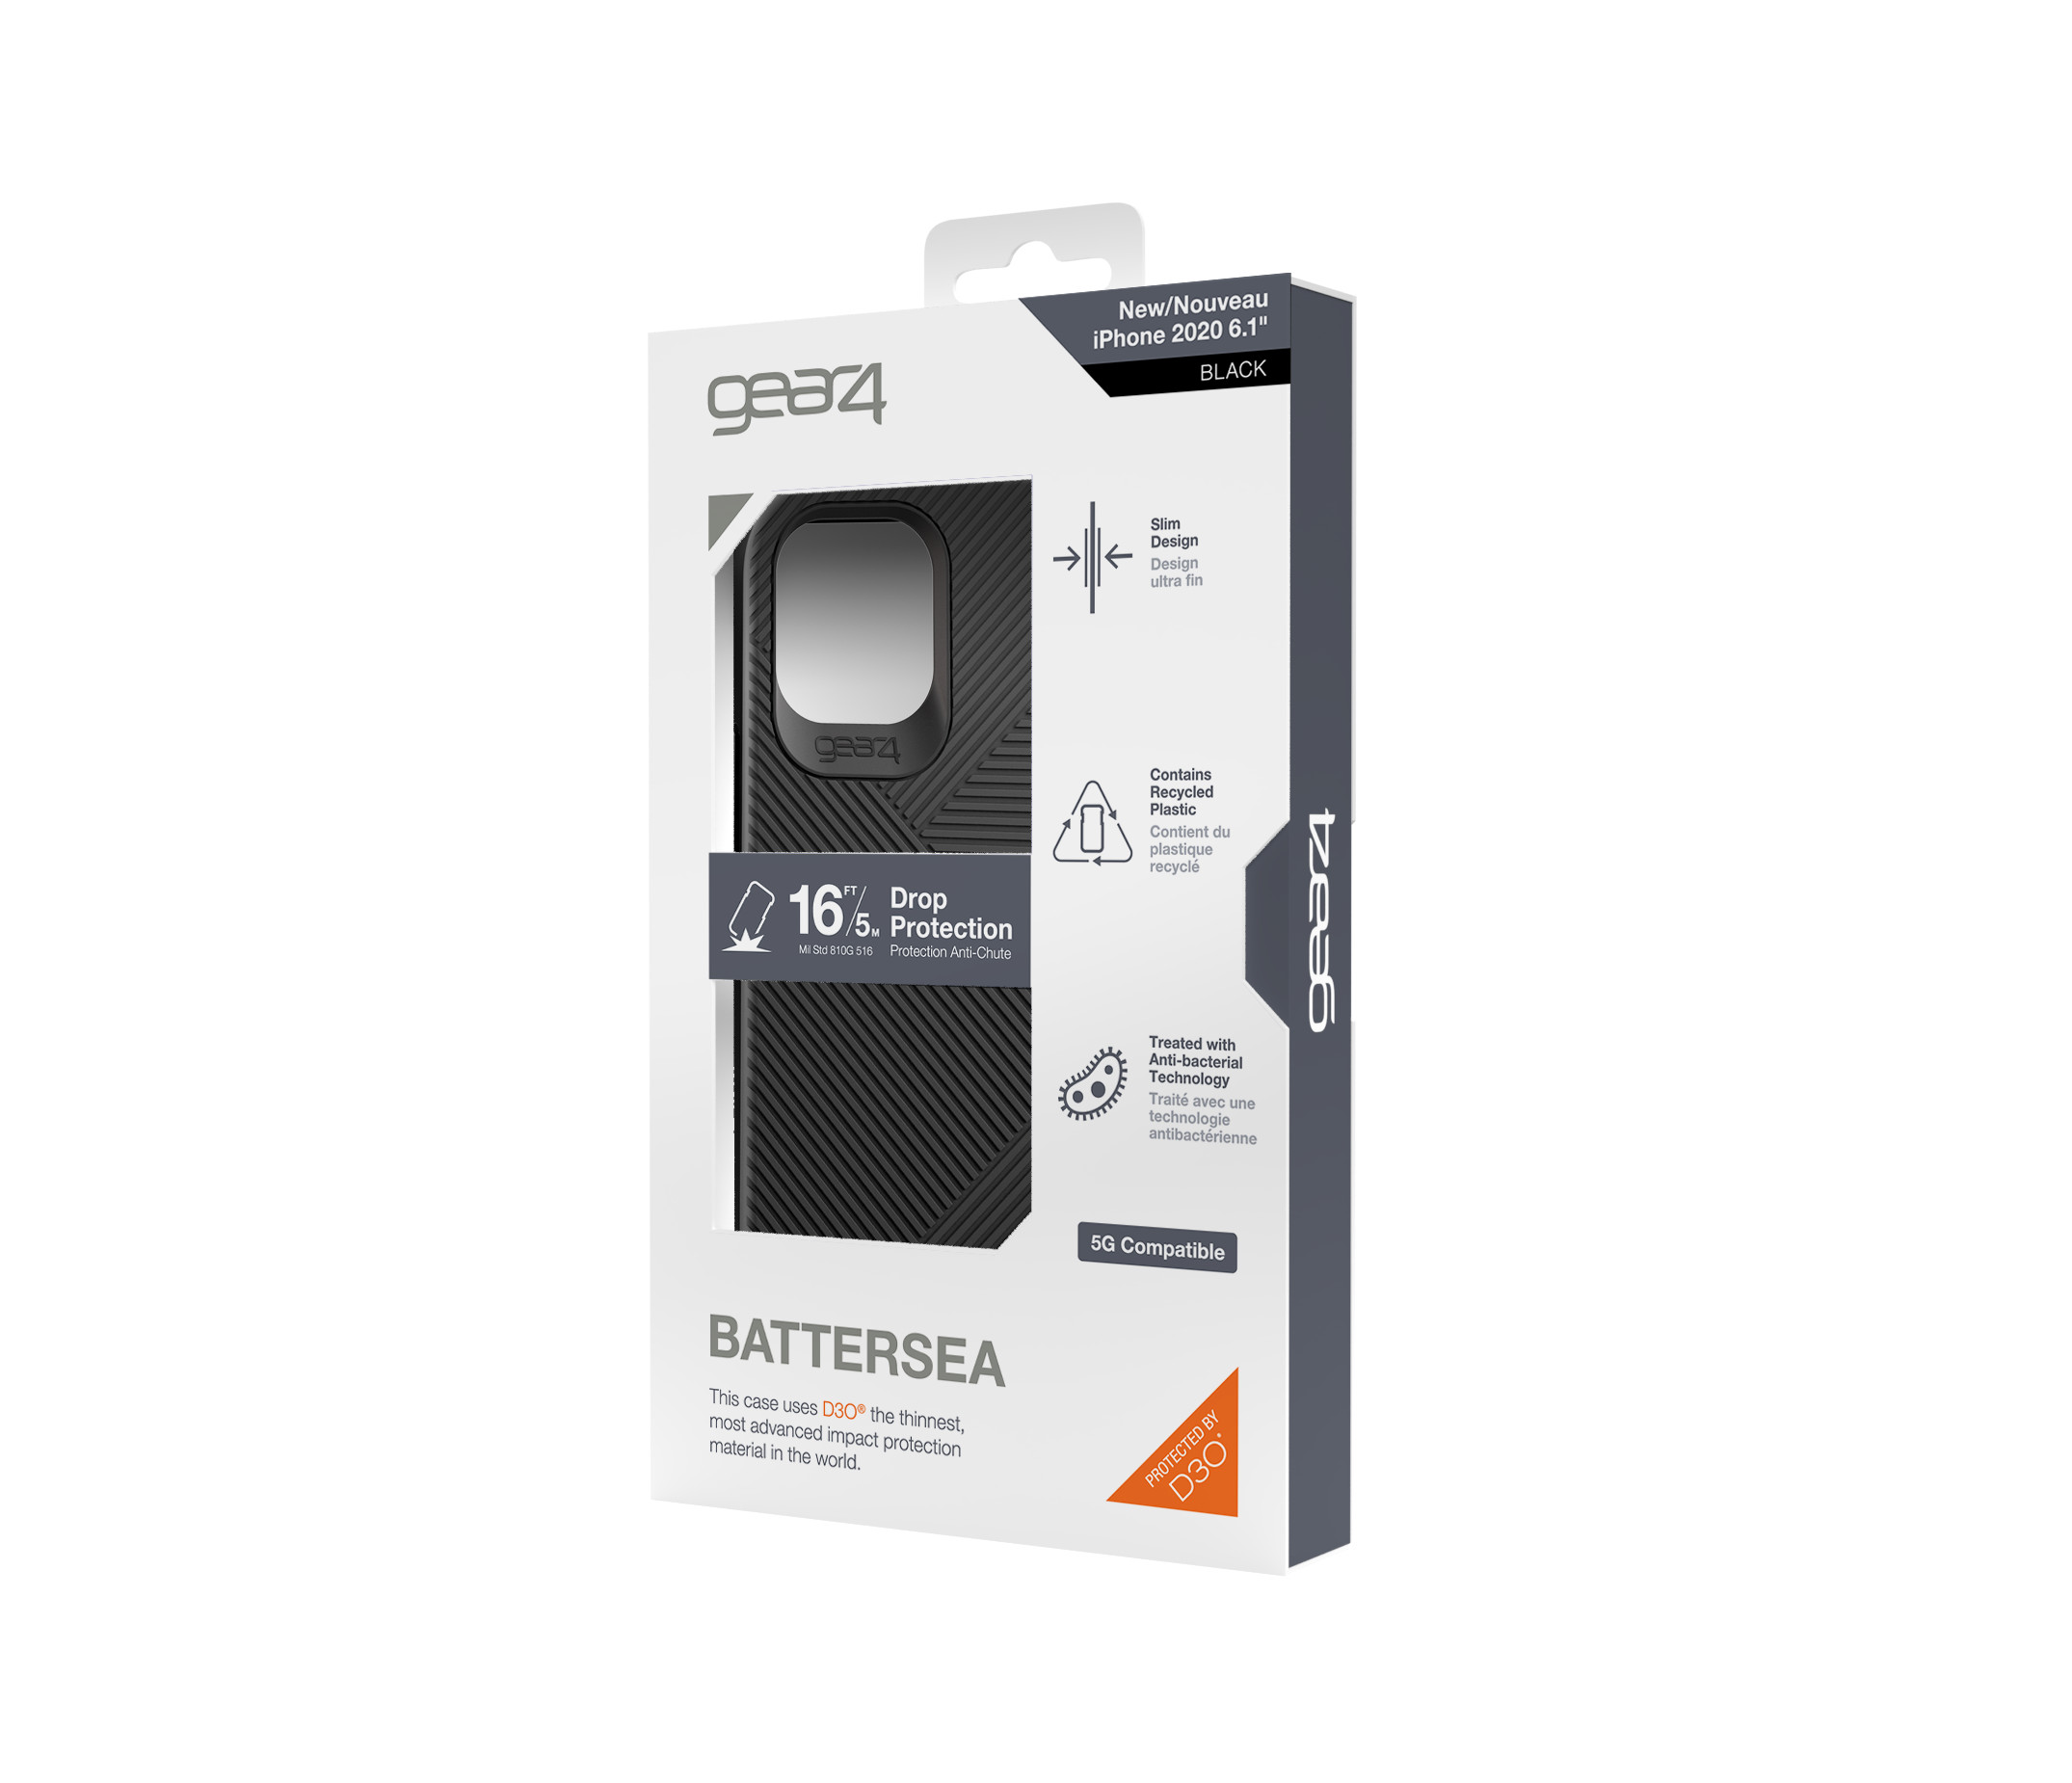 Ốp lưng Gear4 Battersea iPhone - Công nghệ chống sốc độc quyền D3O, kháng khuẩn, tương thích tốt với sóng 5G - Hàng chính hãng